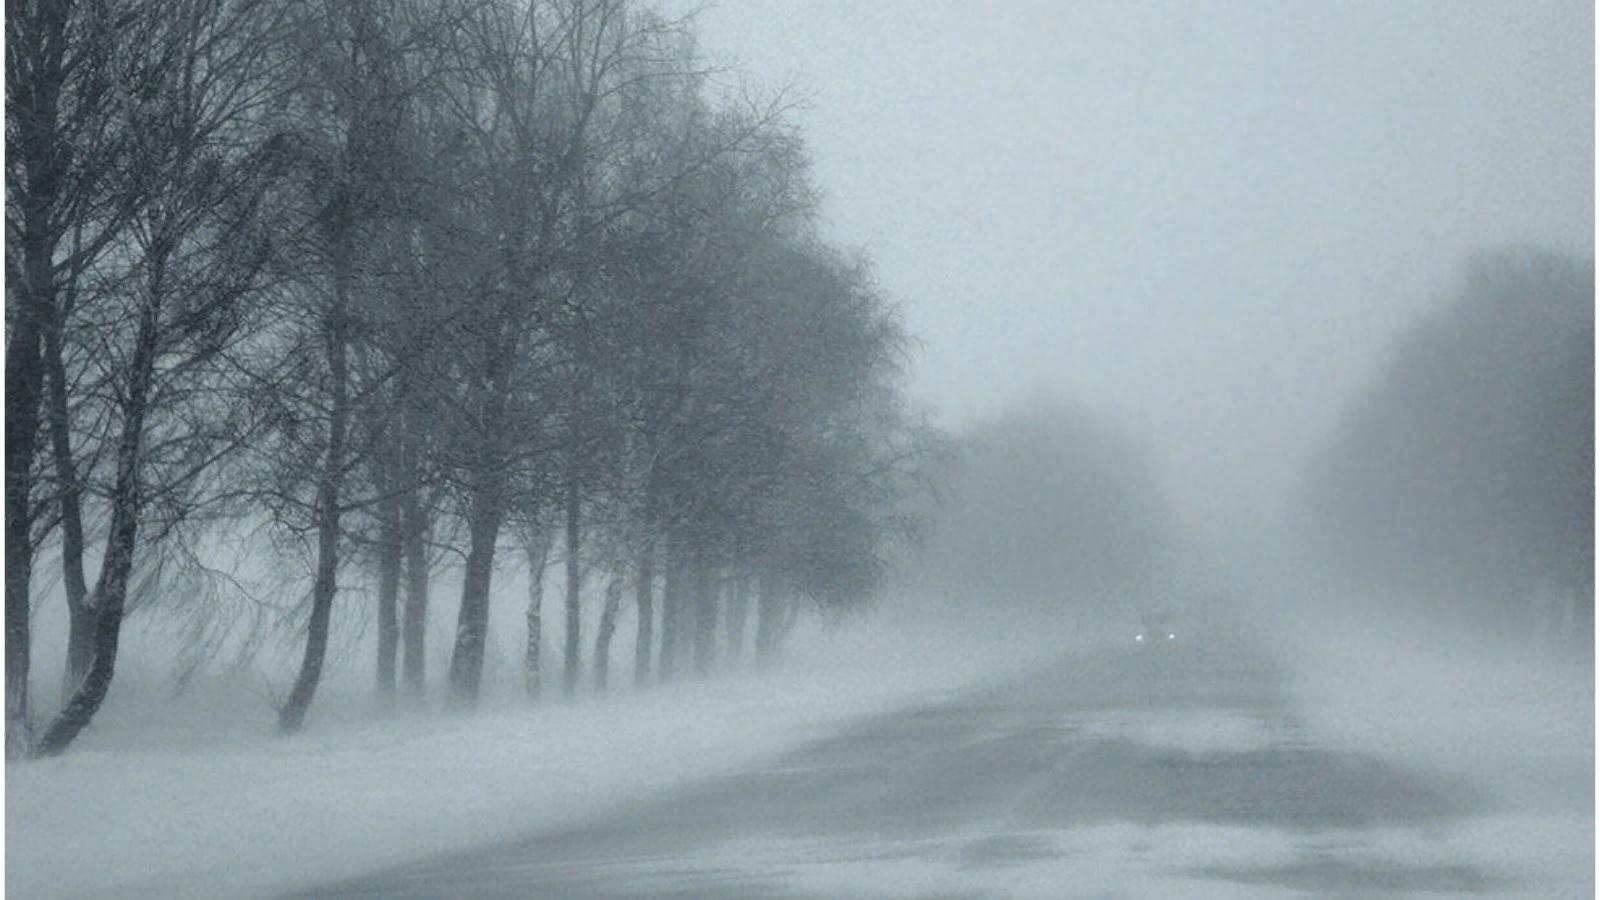 Условиях сильного тумана. Зима туман. Сильный туман. Туман в снегу. Туман зимой на дороге.